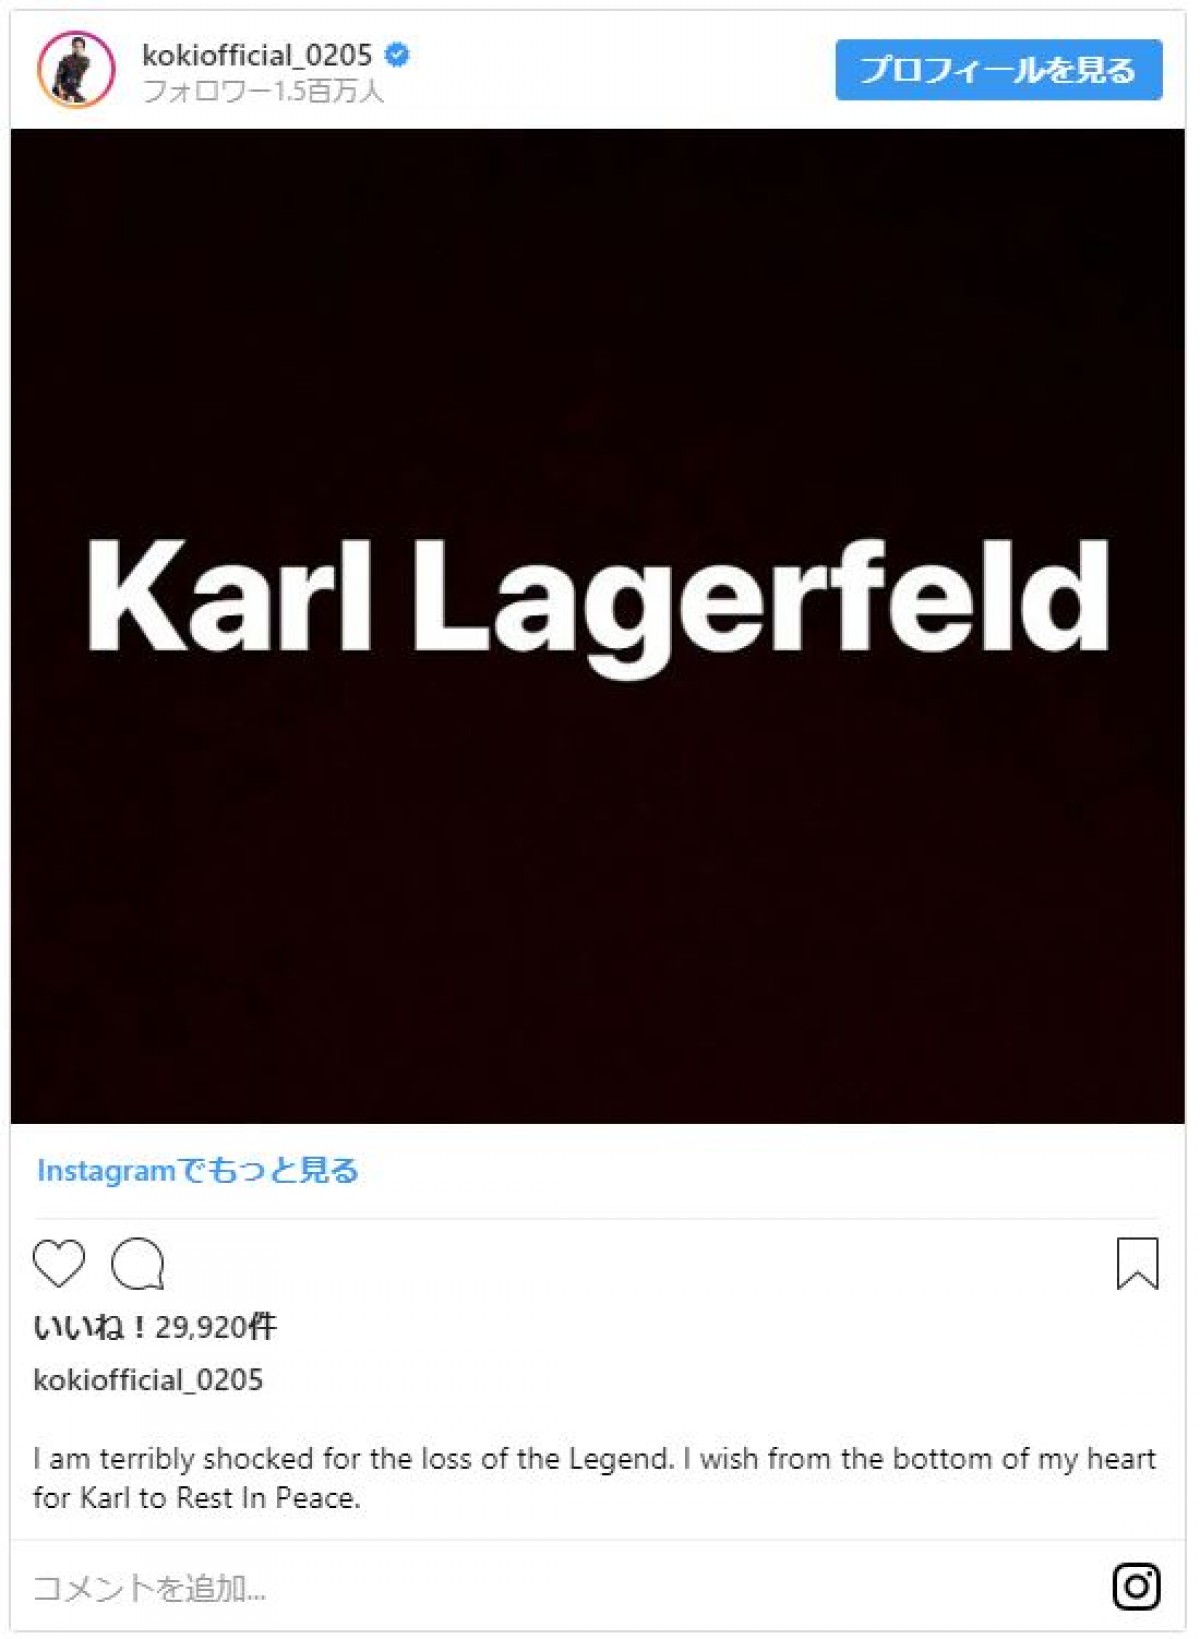 ファッション界の重鎮カール・ラガーフェルドさんが死去、セレブが追悼コメント